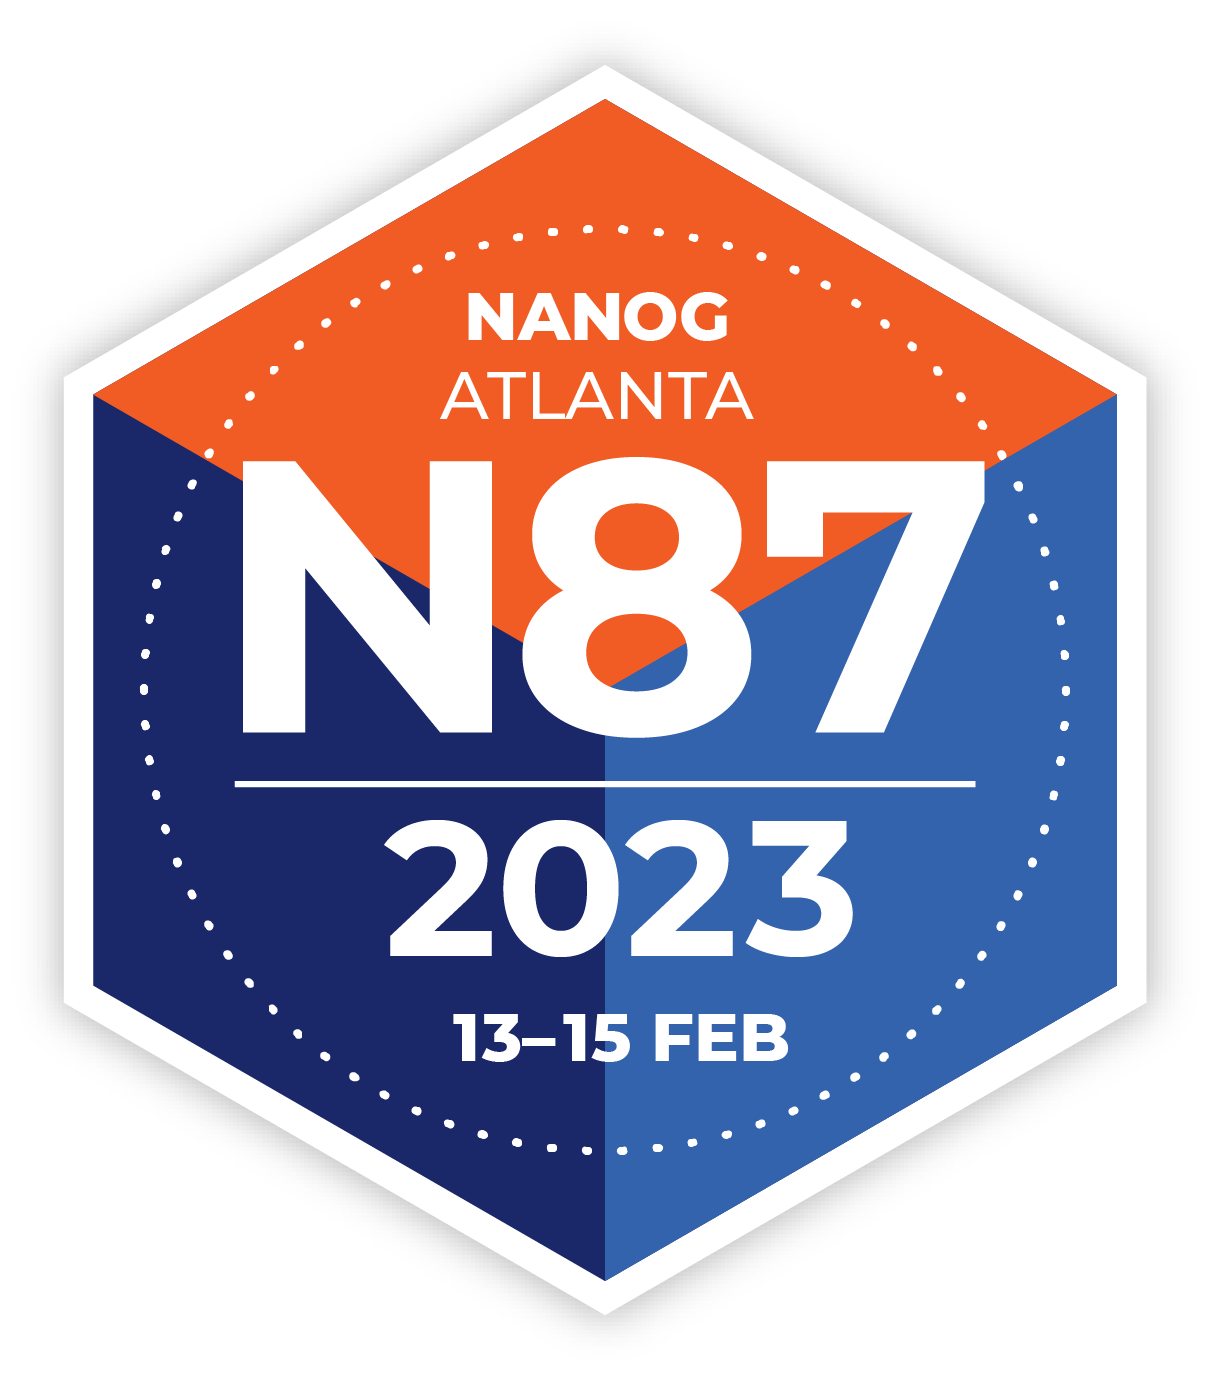 Blue and orange hexagonal logo for NANOG 87